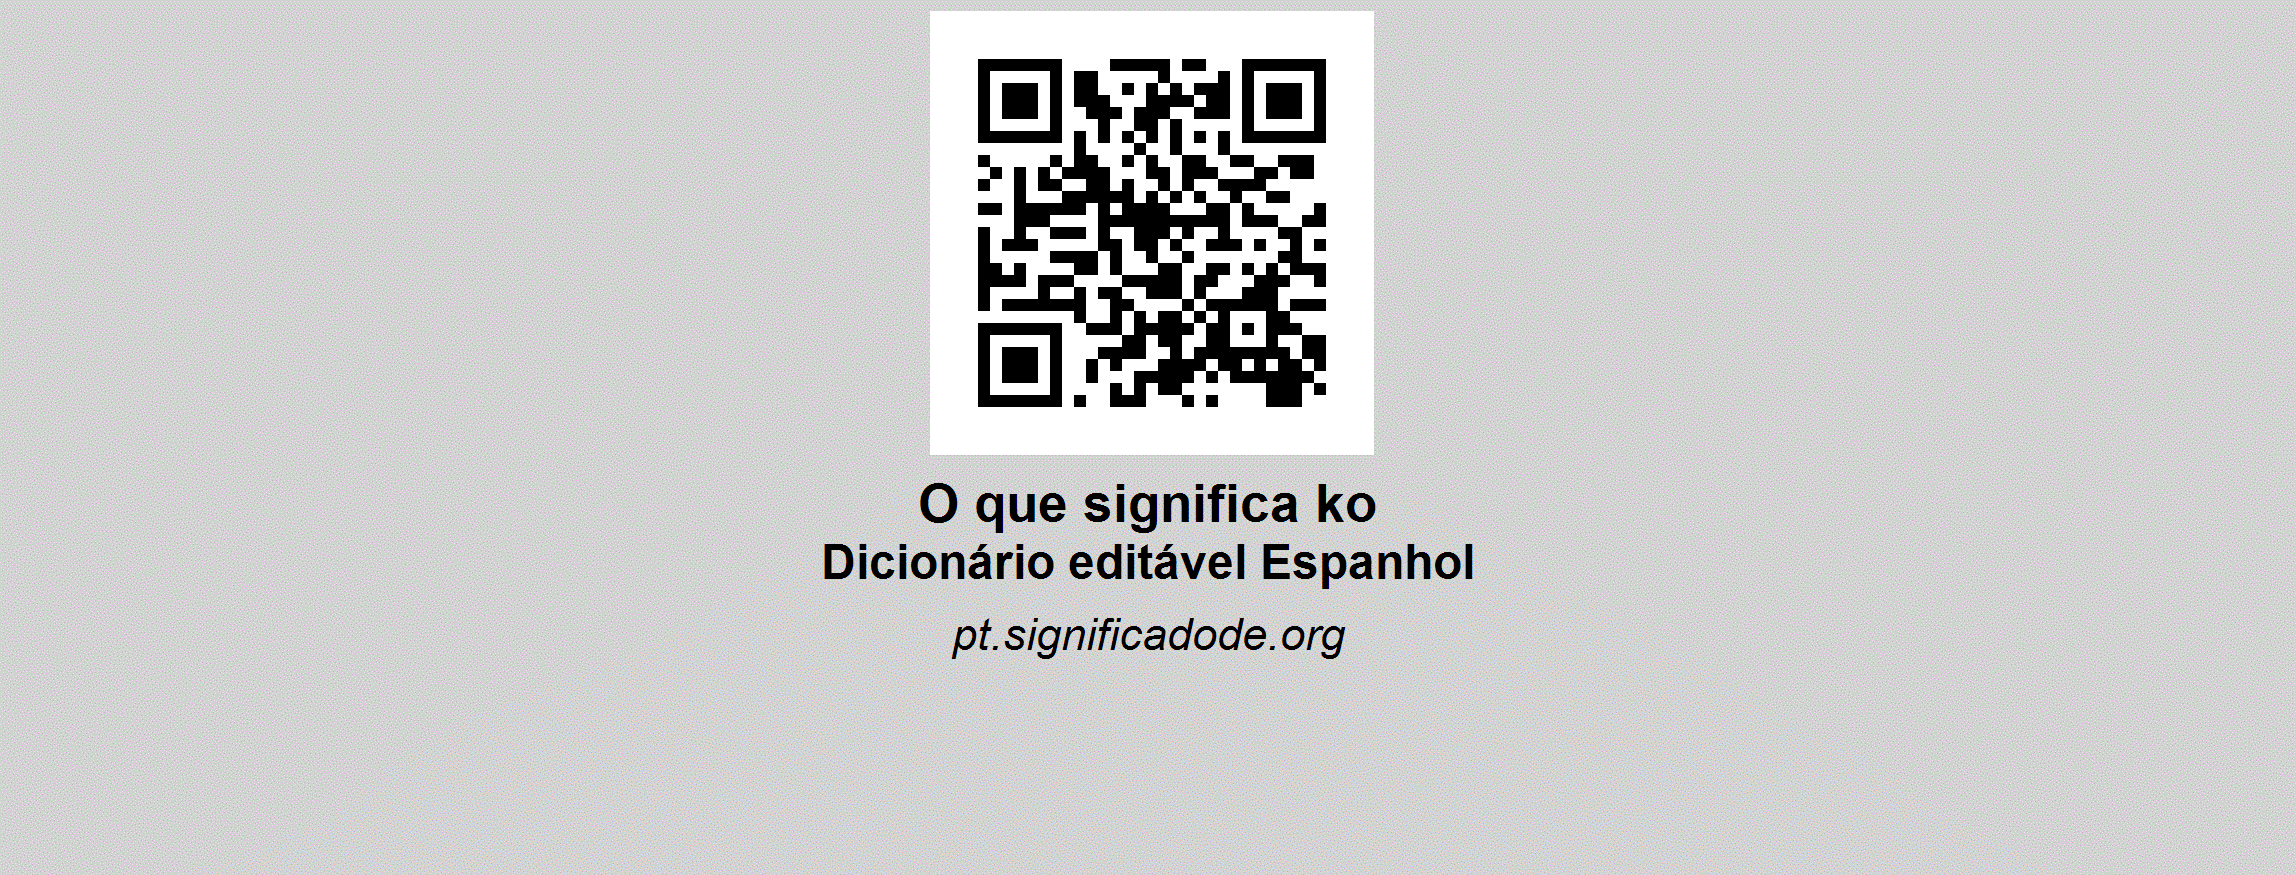 KO - Espanhol, dicionário colaborativo